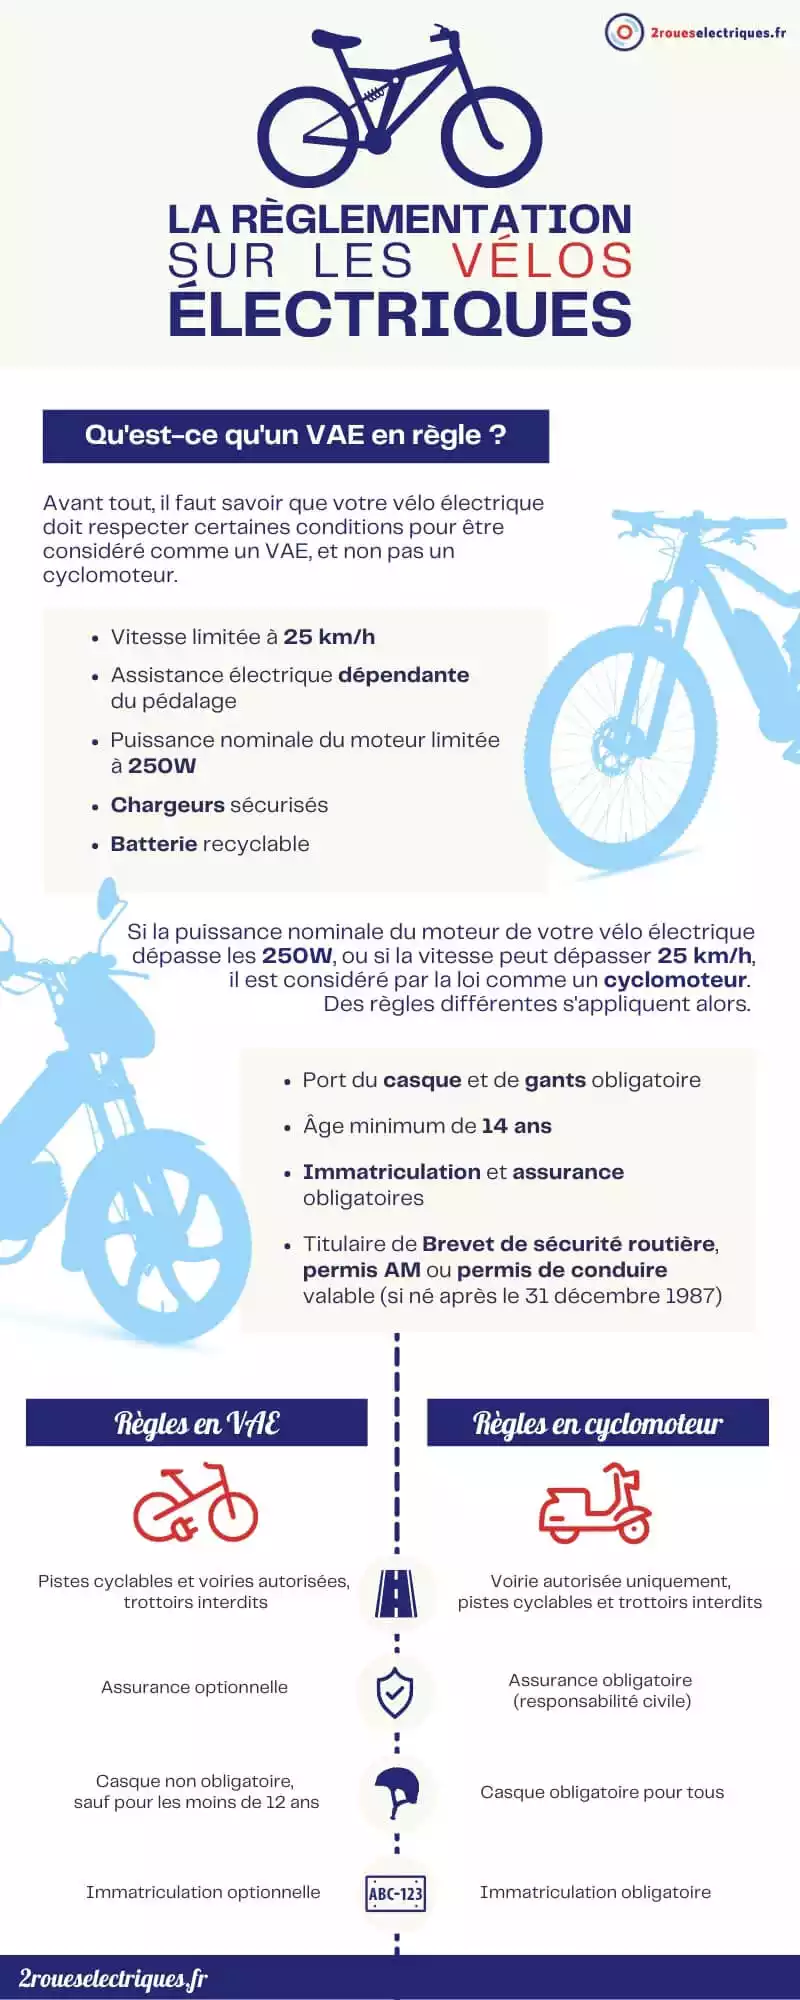 Règlementation vélo électrique : infographie 2roueselectriques